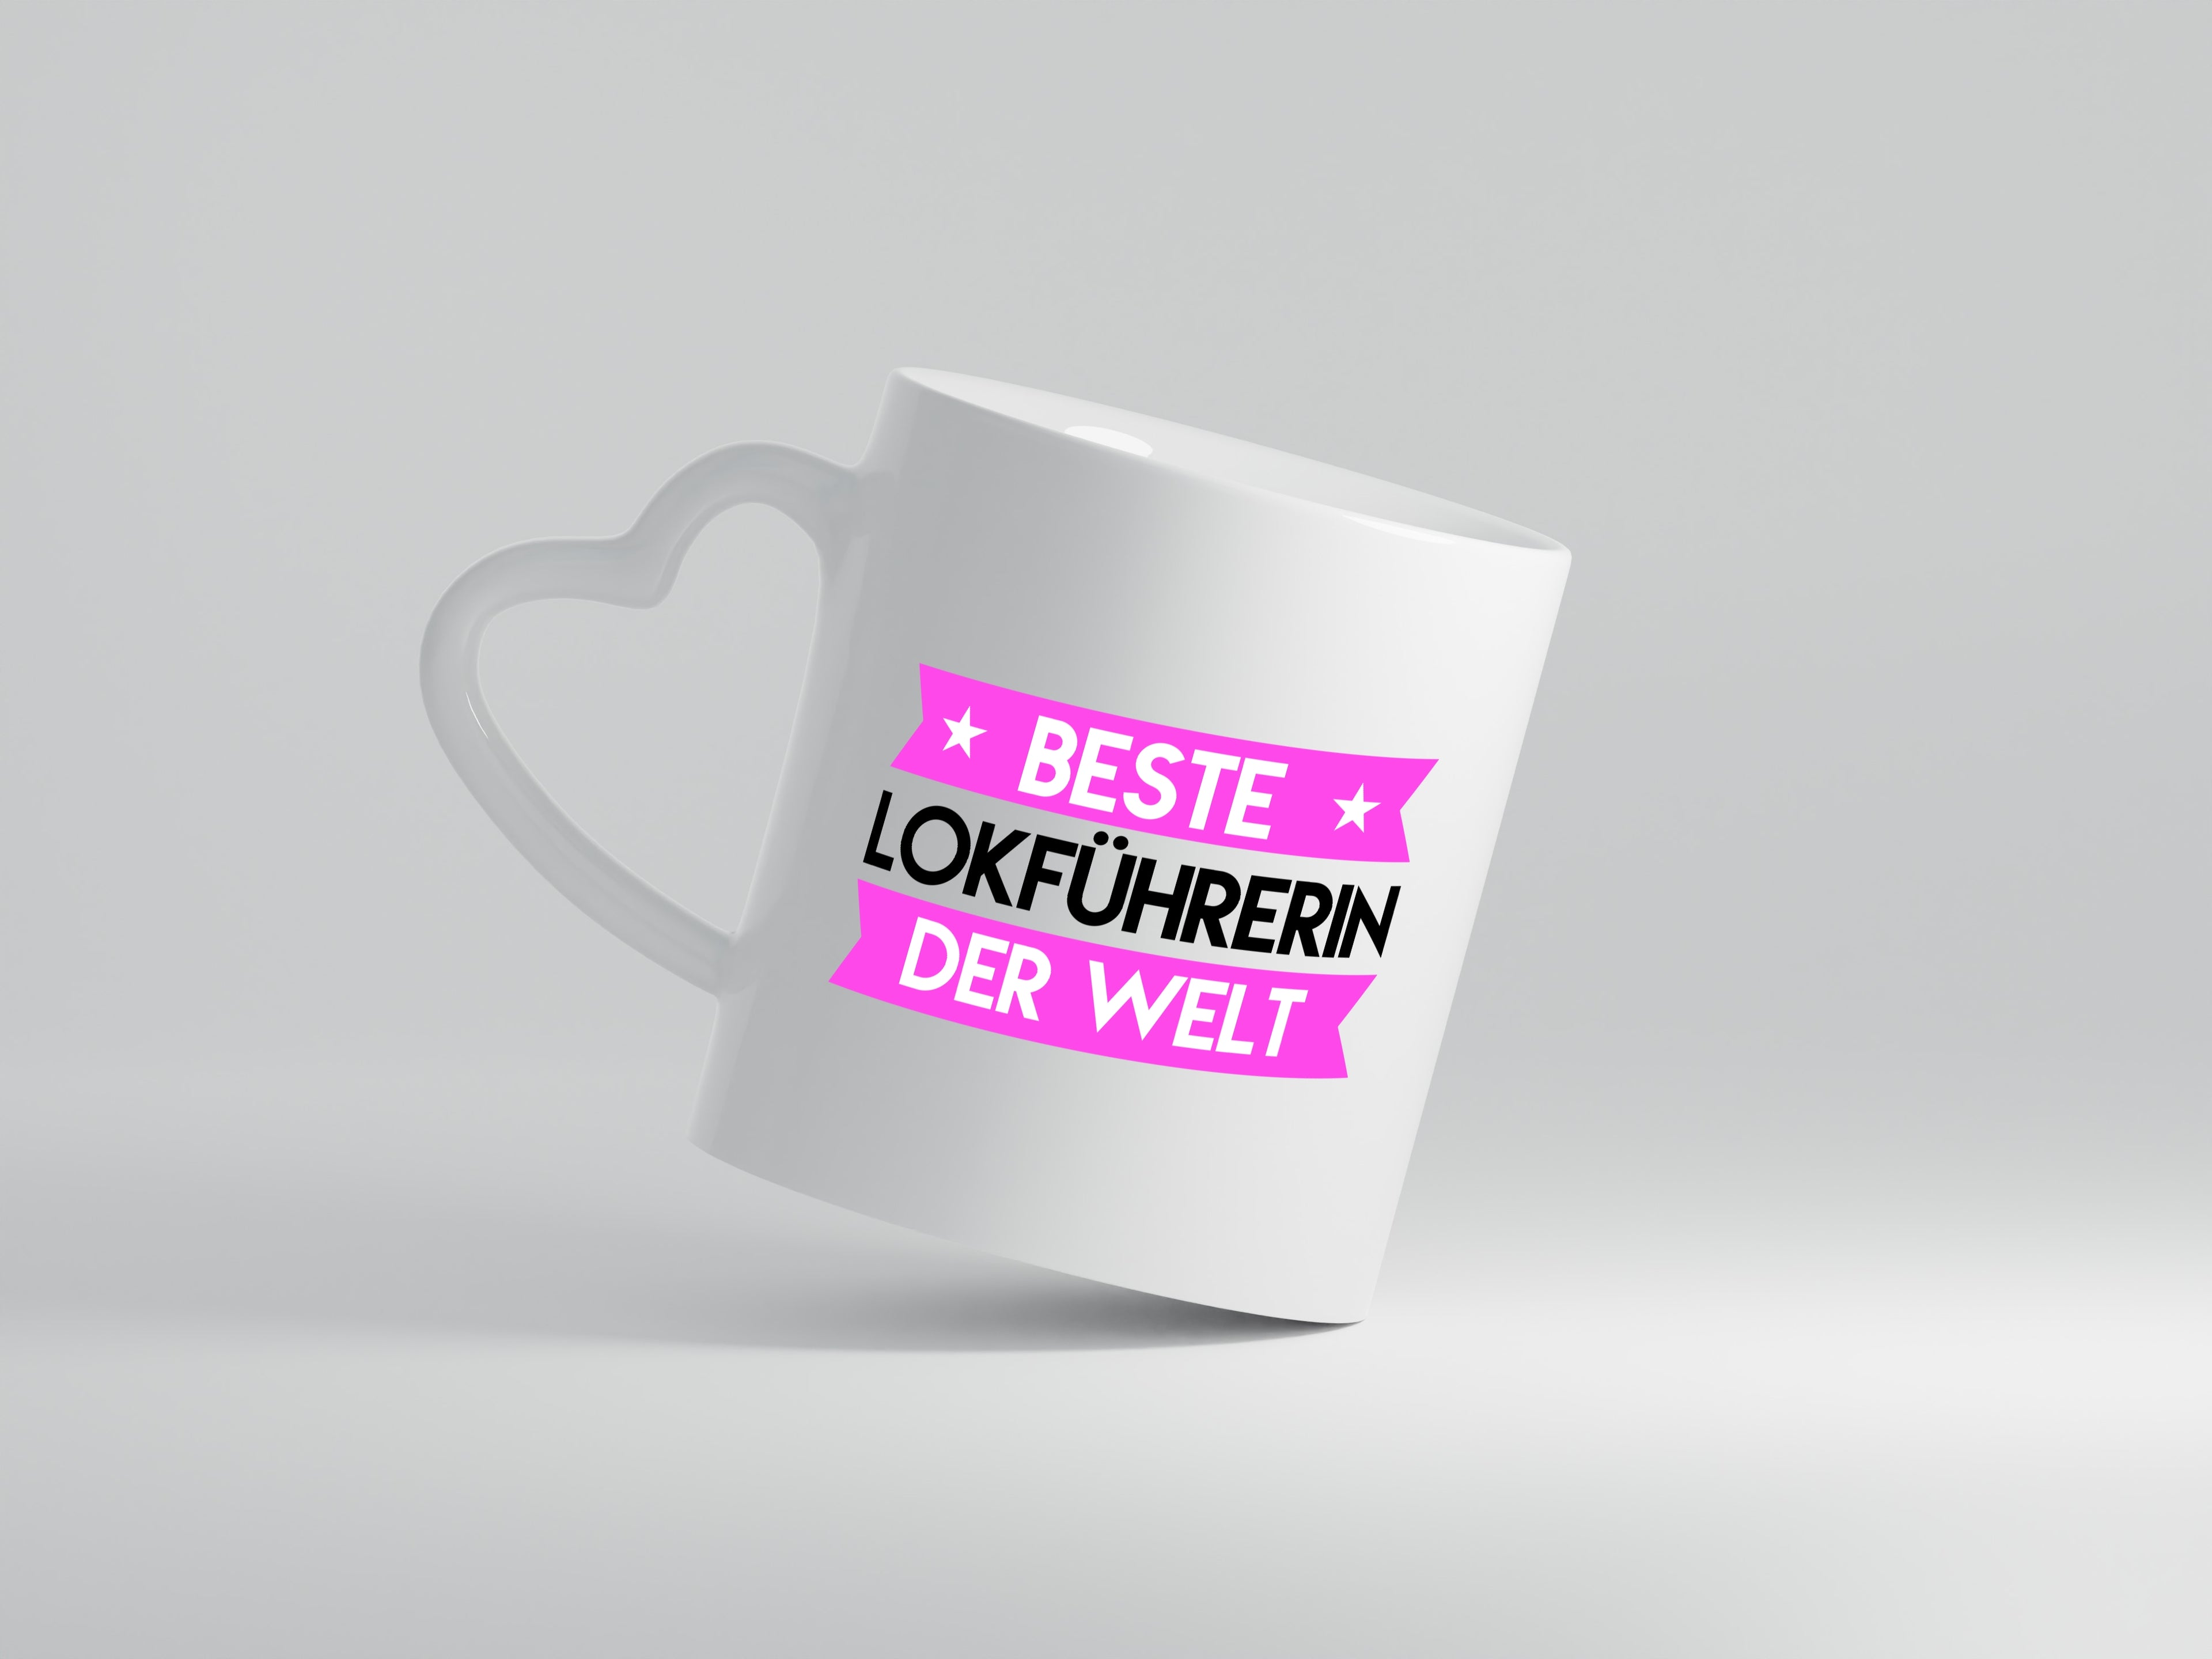 Beste Lokführerin | Zug | Beruf - Herzhenkel Tasse - Kaffeetasse / Geschenk / Familie